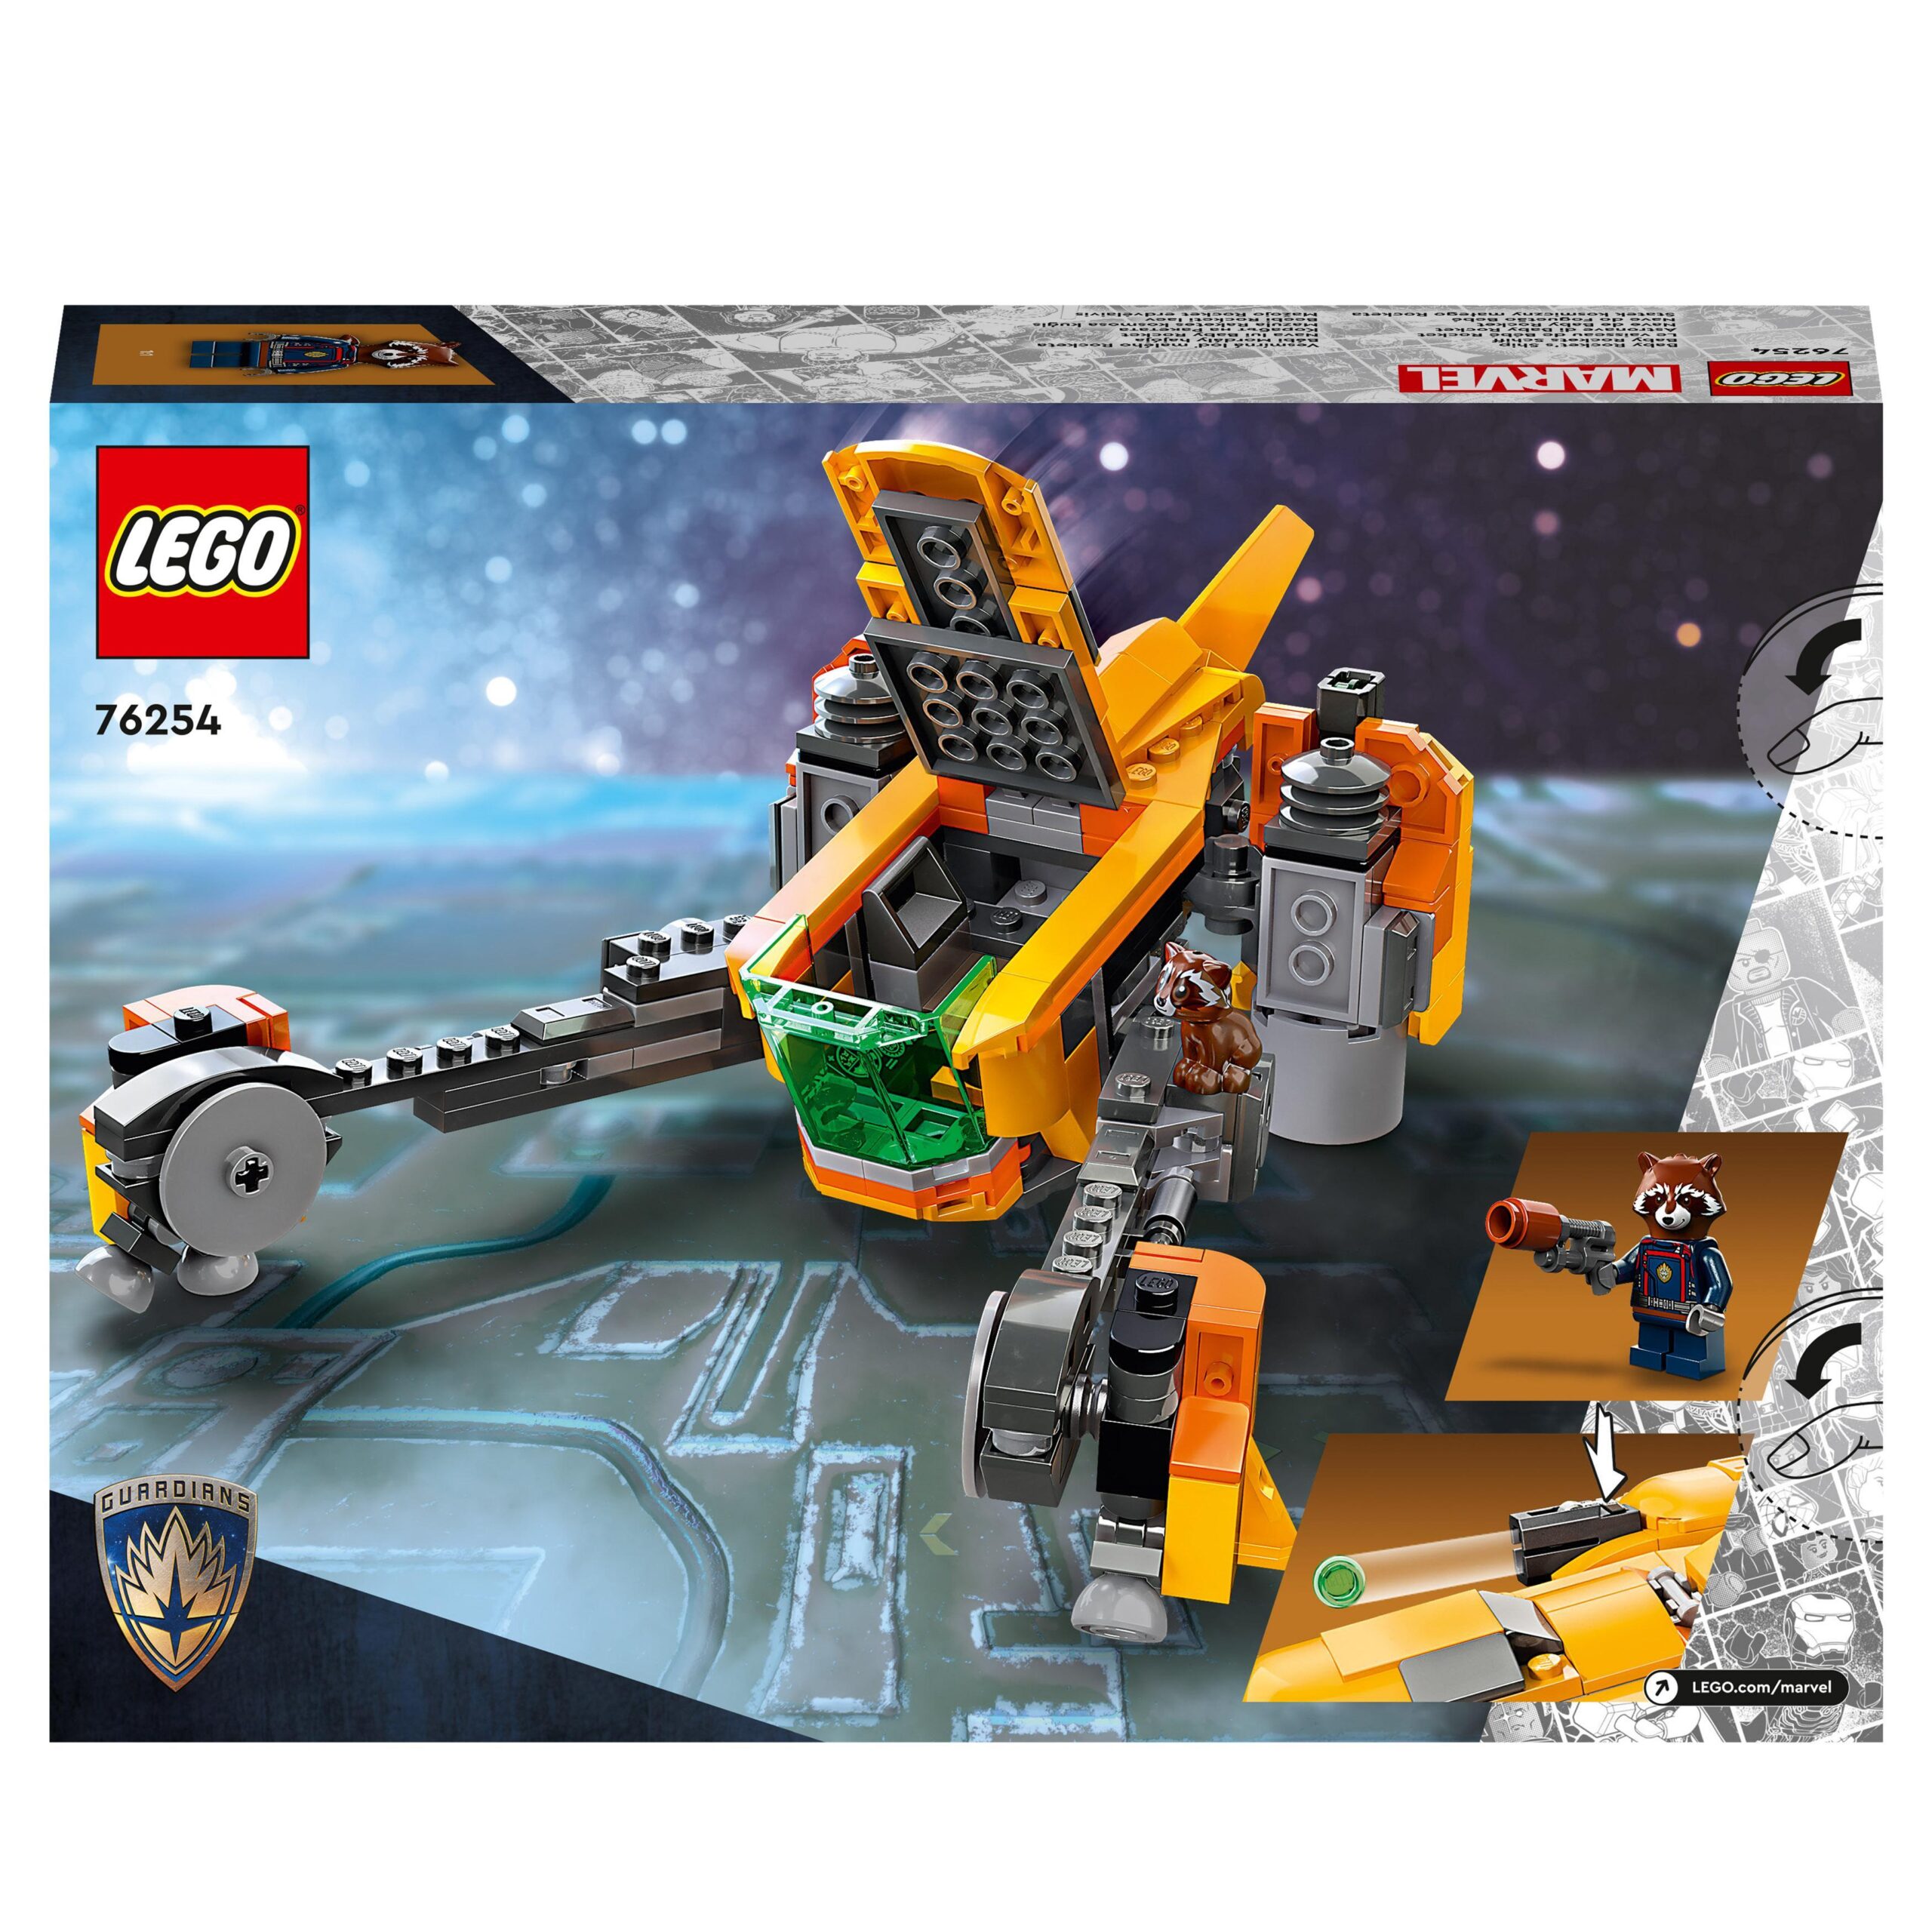 Lego marvel 76254 astronave di baby rocket, giocattolo da costruire del supereroe dei guardiani della galassia volume 3 - LEGO SUPER HEROES